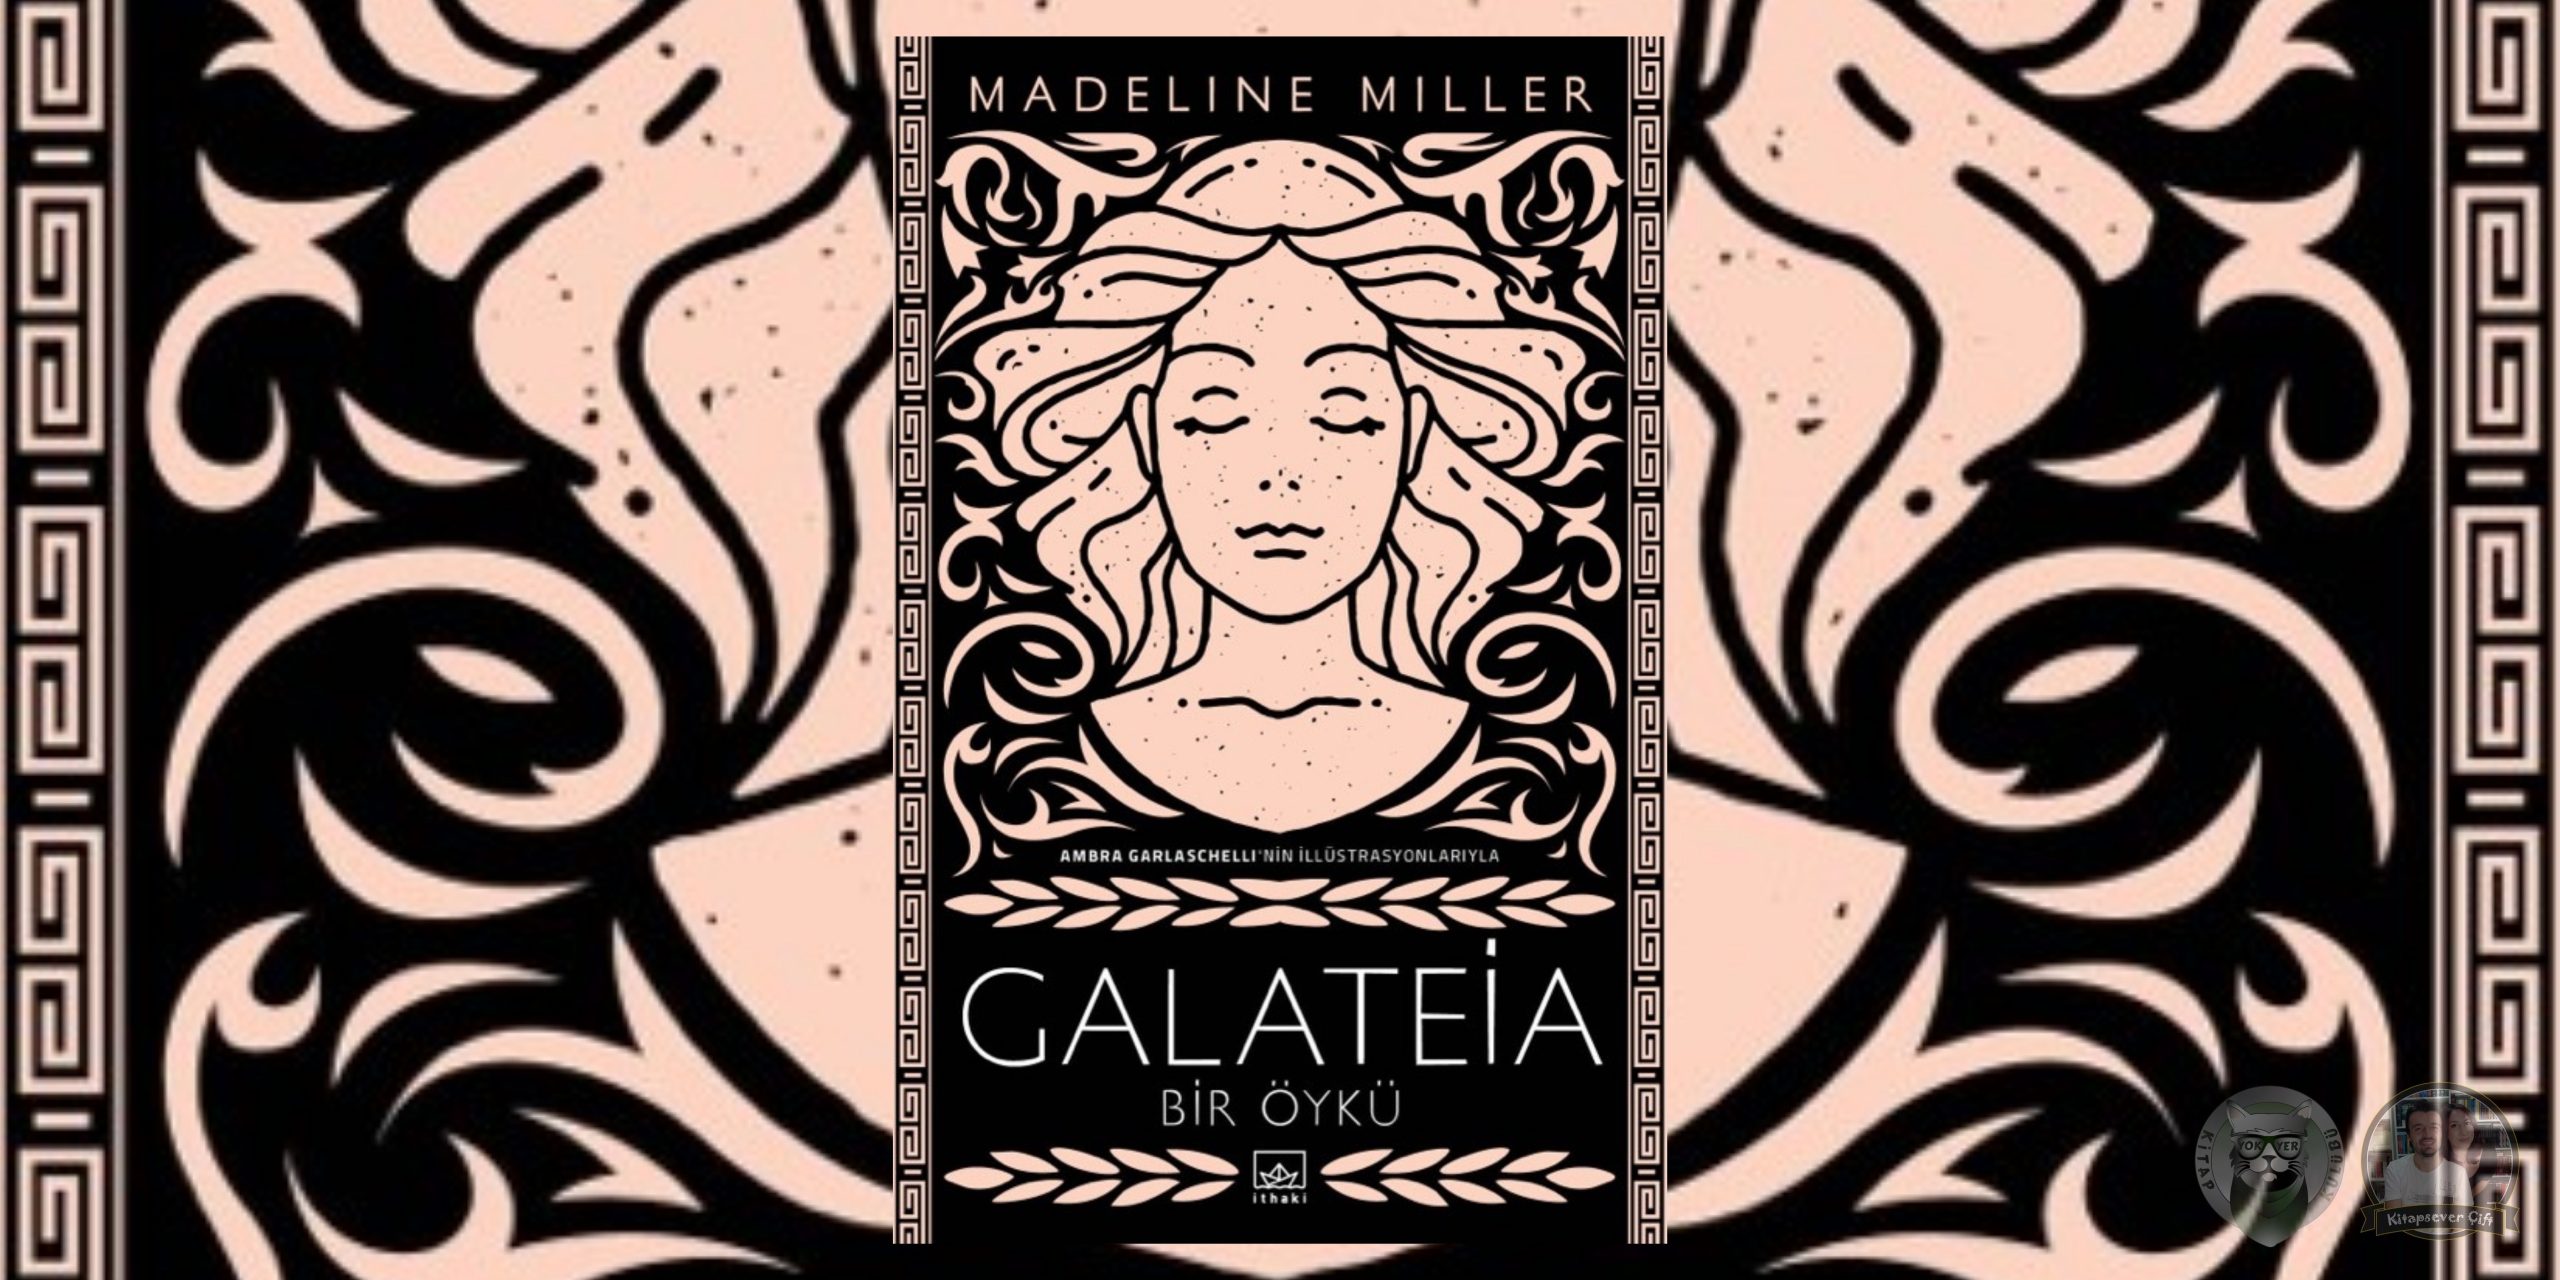 galateia - bir öykü